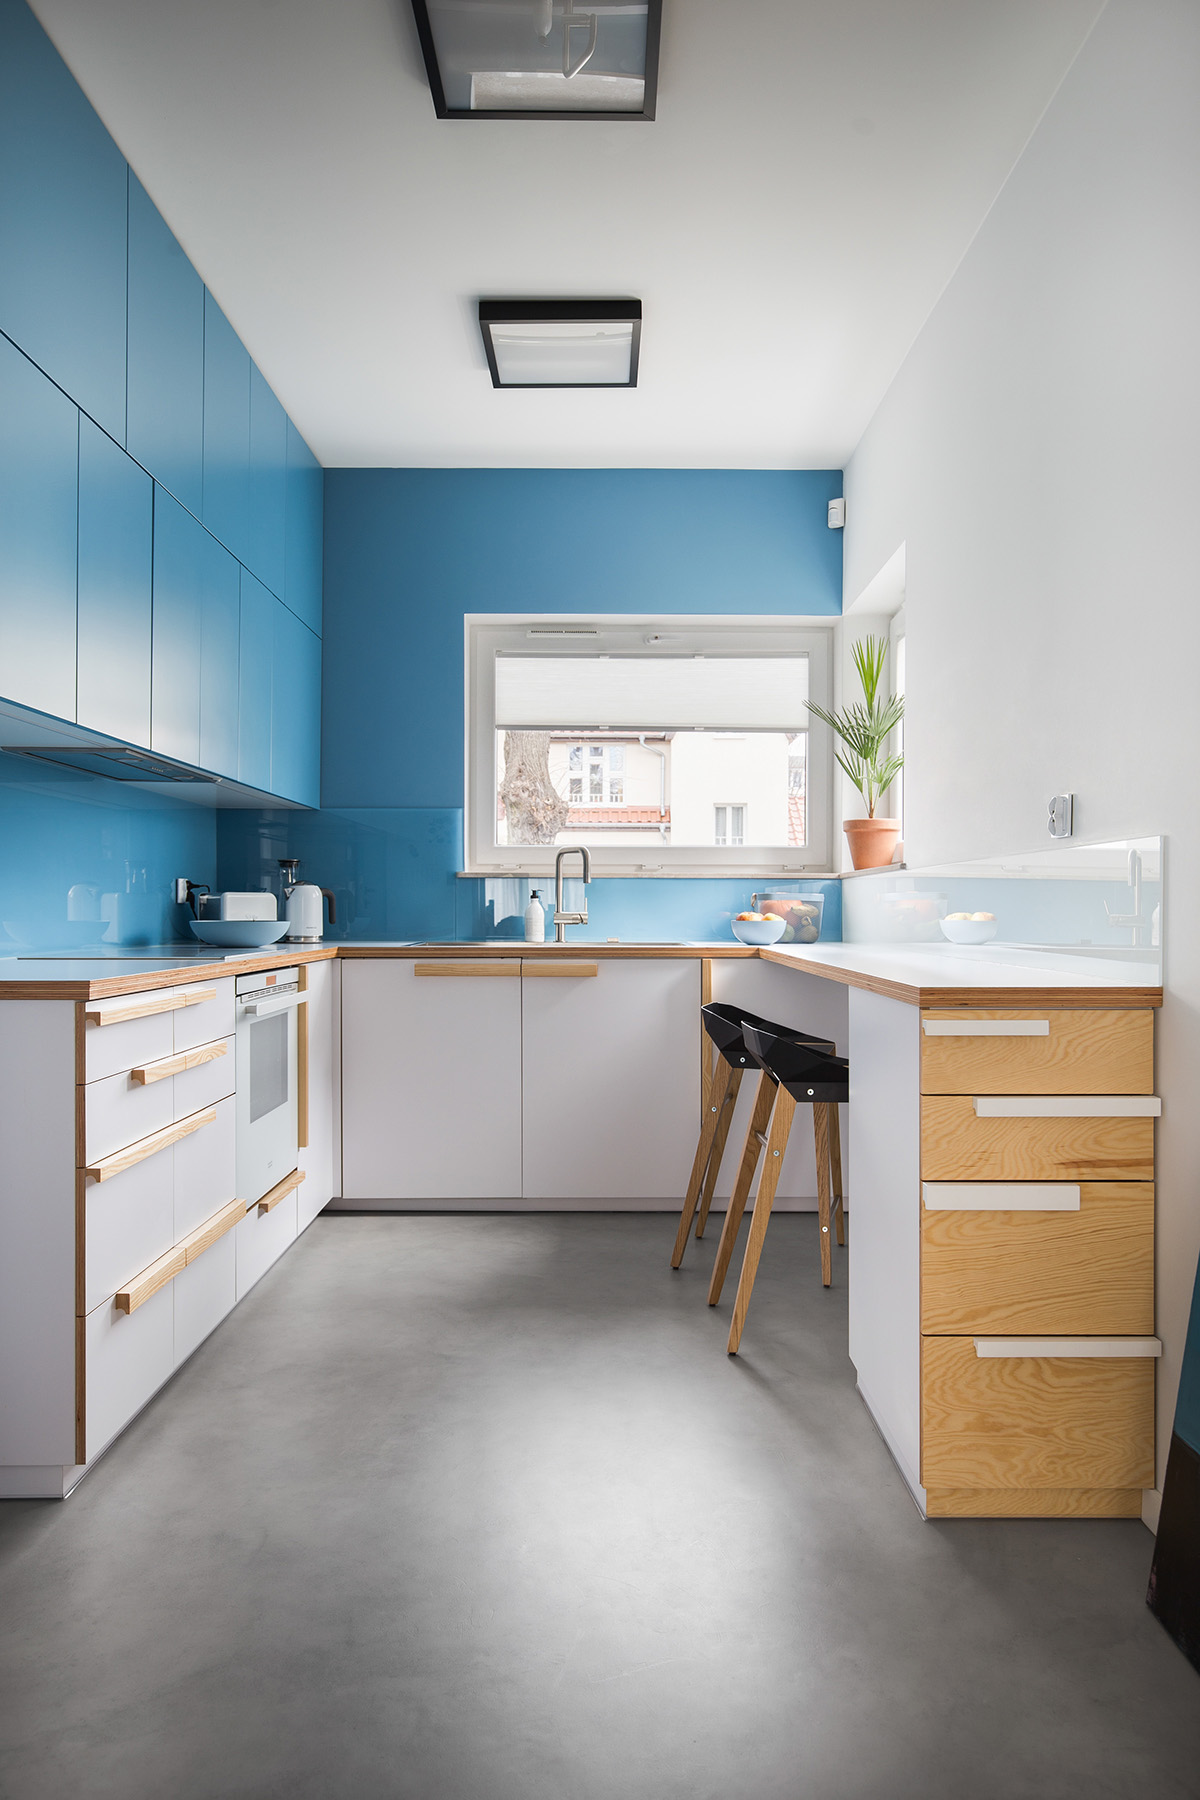 Trang trí nhà bếp màu xanh tươi sáng hoàn toàn phù hợp với tổng thể ngôi nhà có nội thất theo phong cách Scanadivia này.